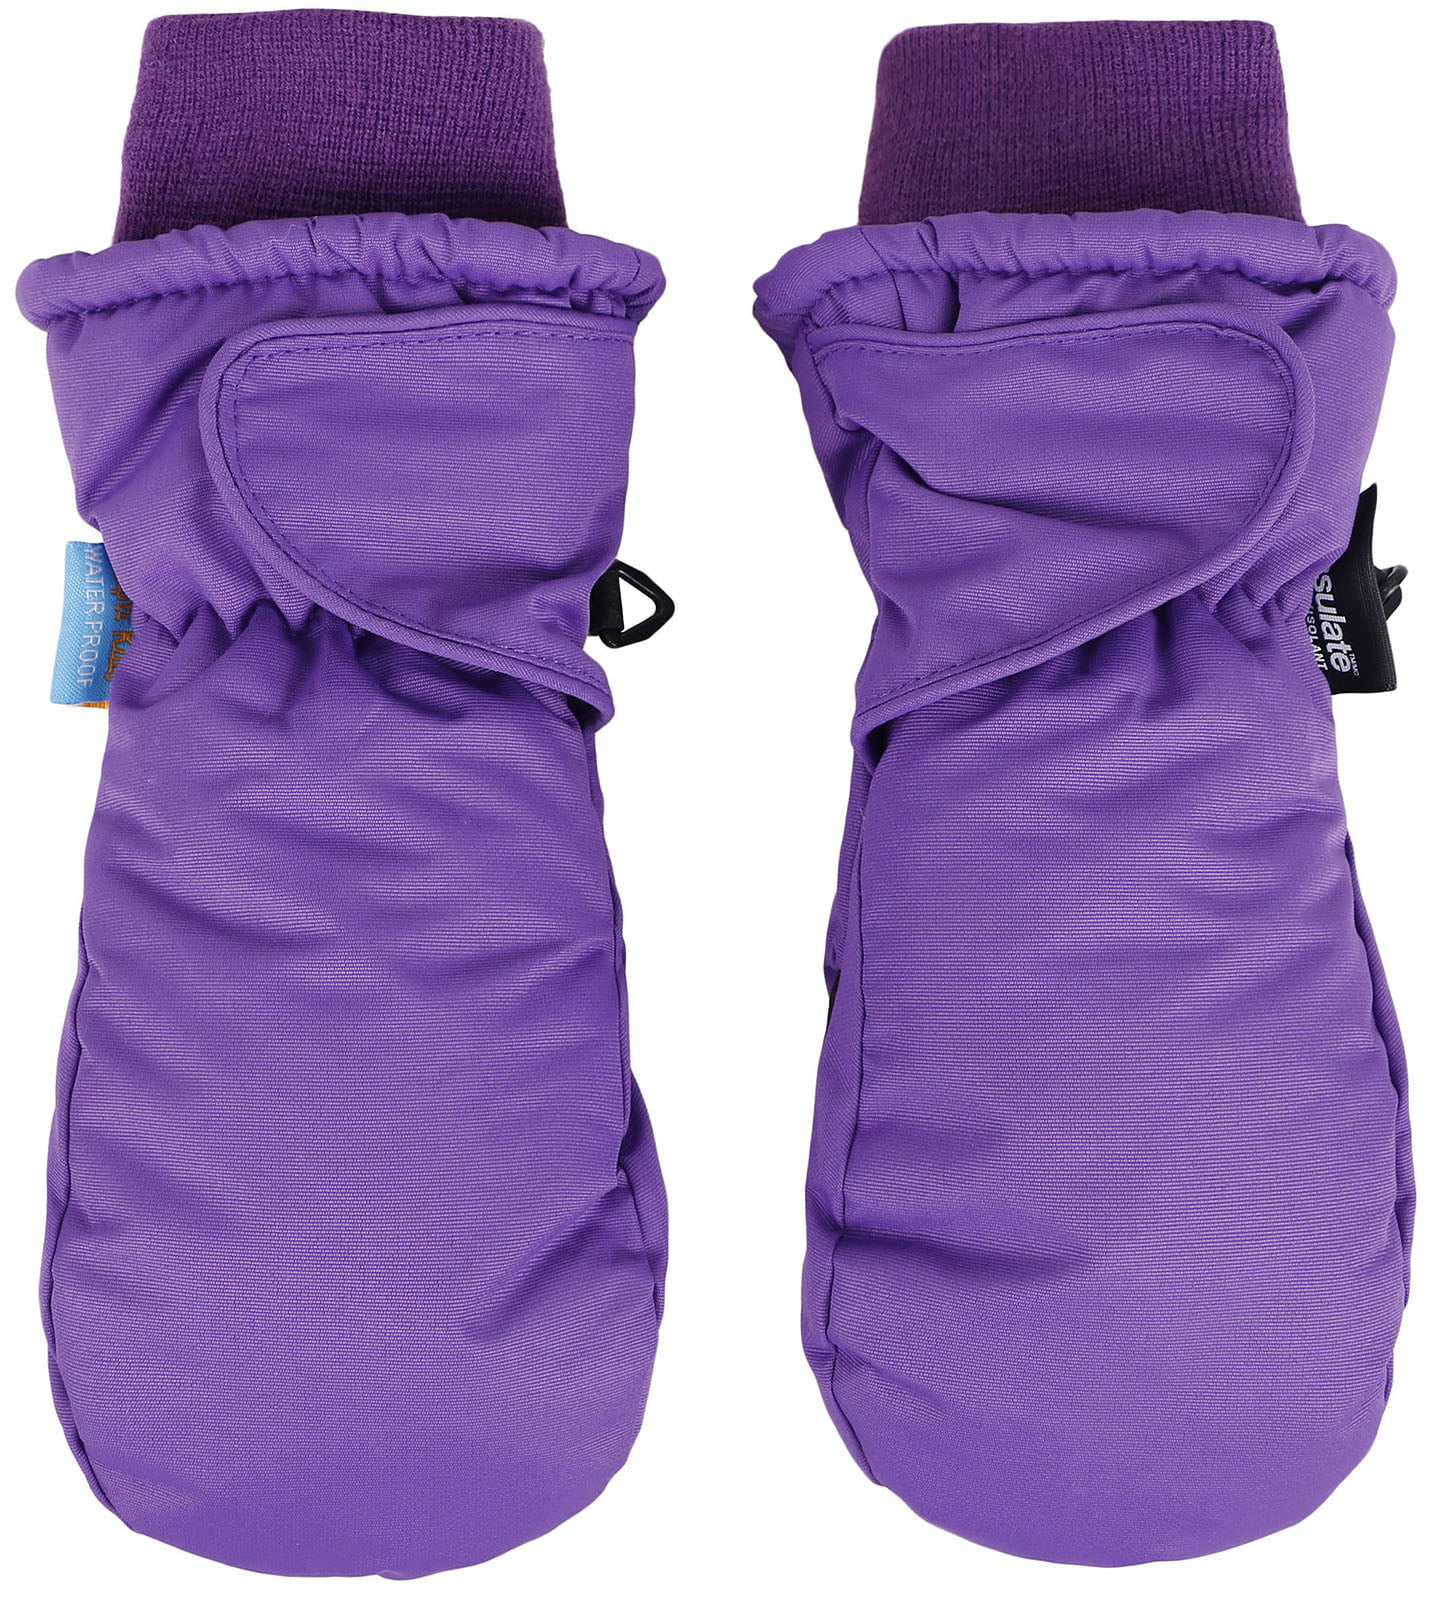 Wonderkids Toddler Purple Winter Mittens 3M Thinsulate Insulation One Size Snow 